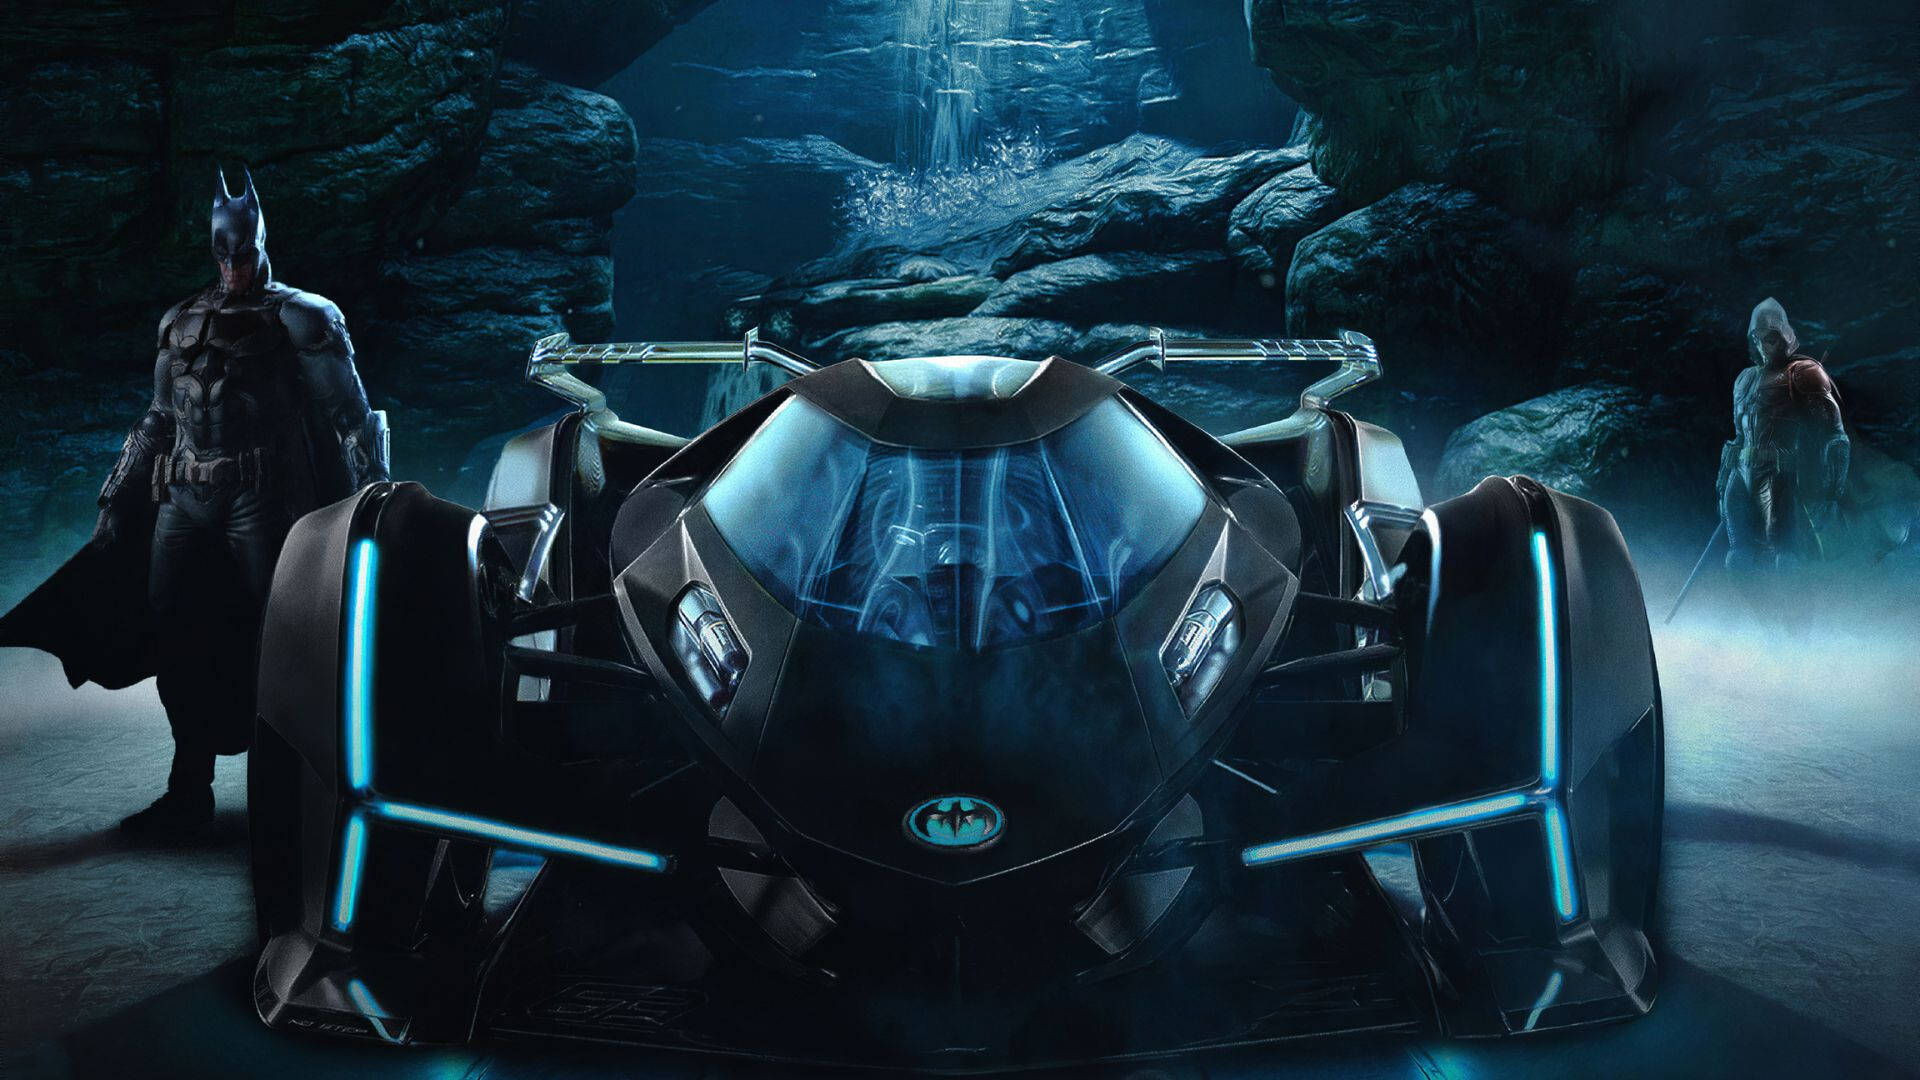 Batmobile In The Cave Wallpaper